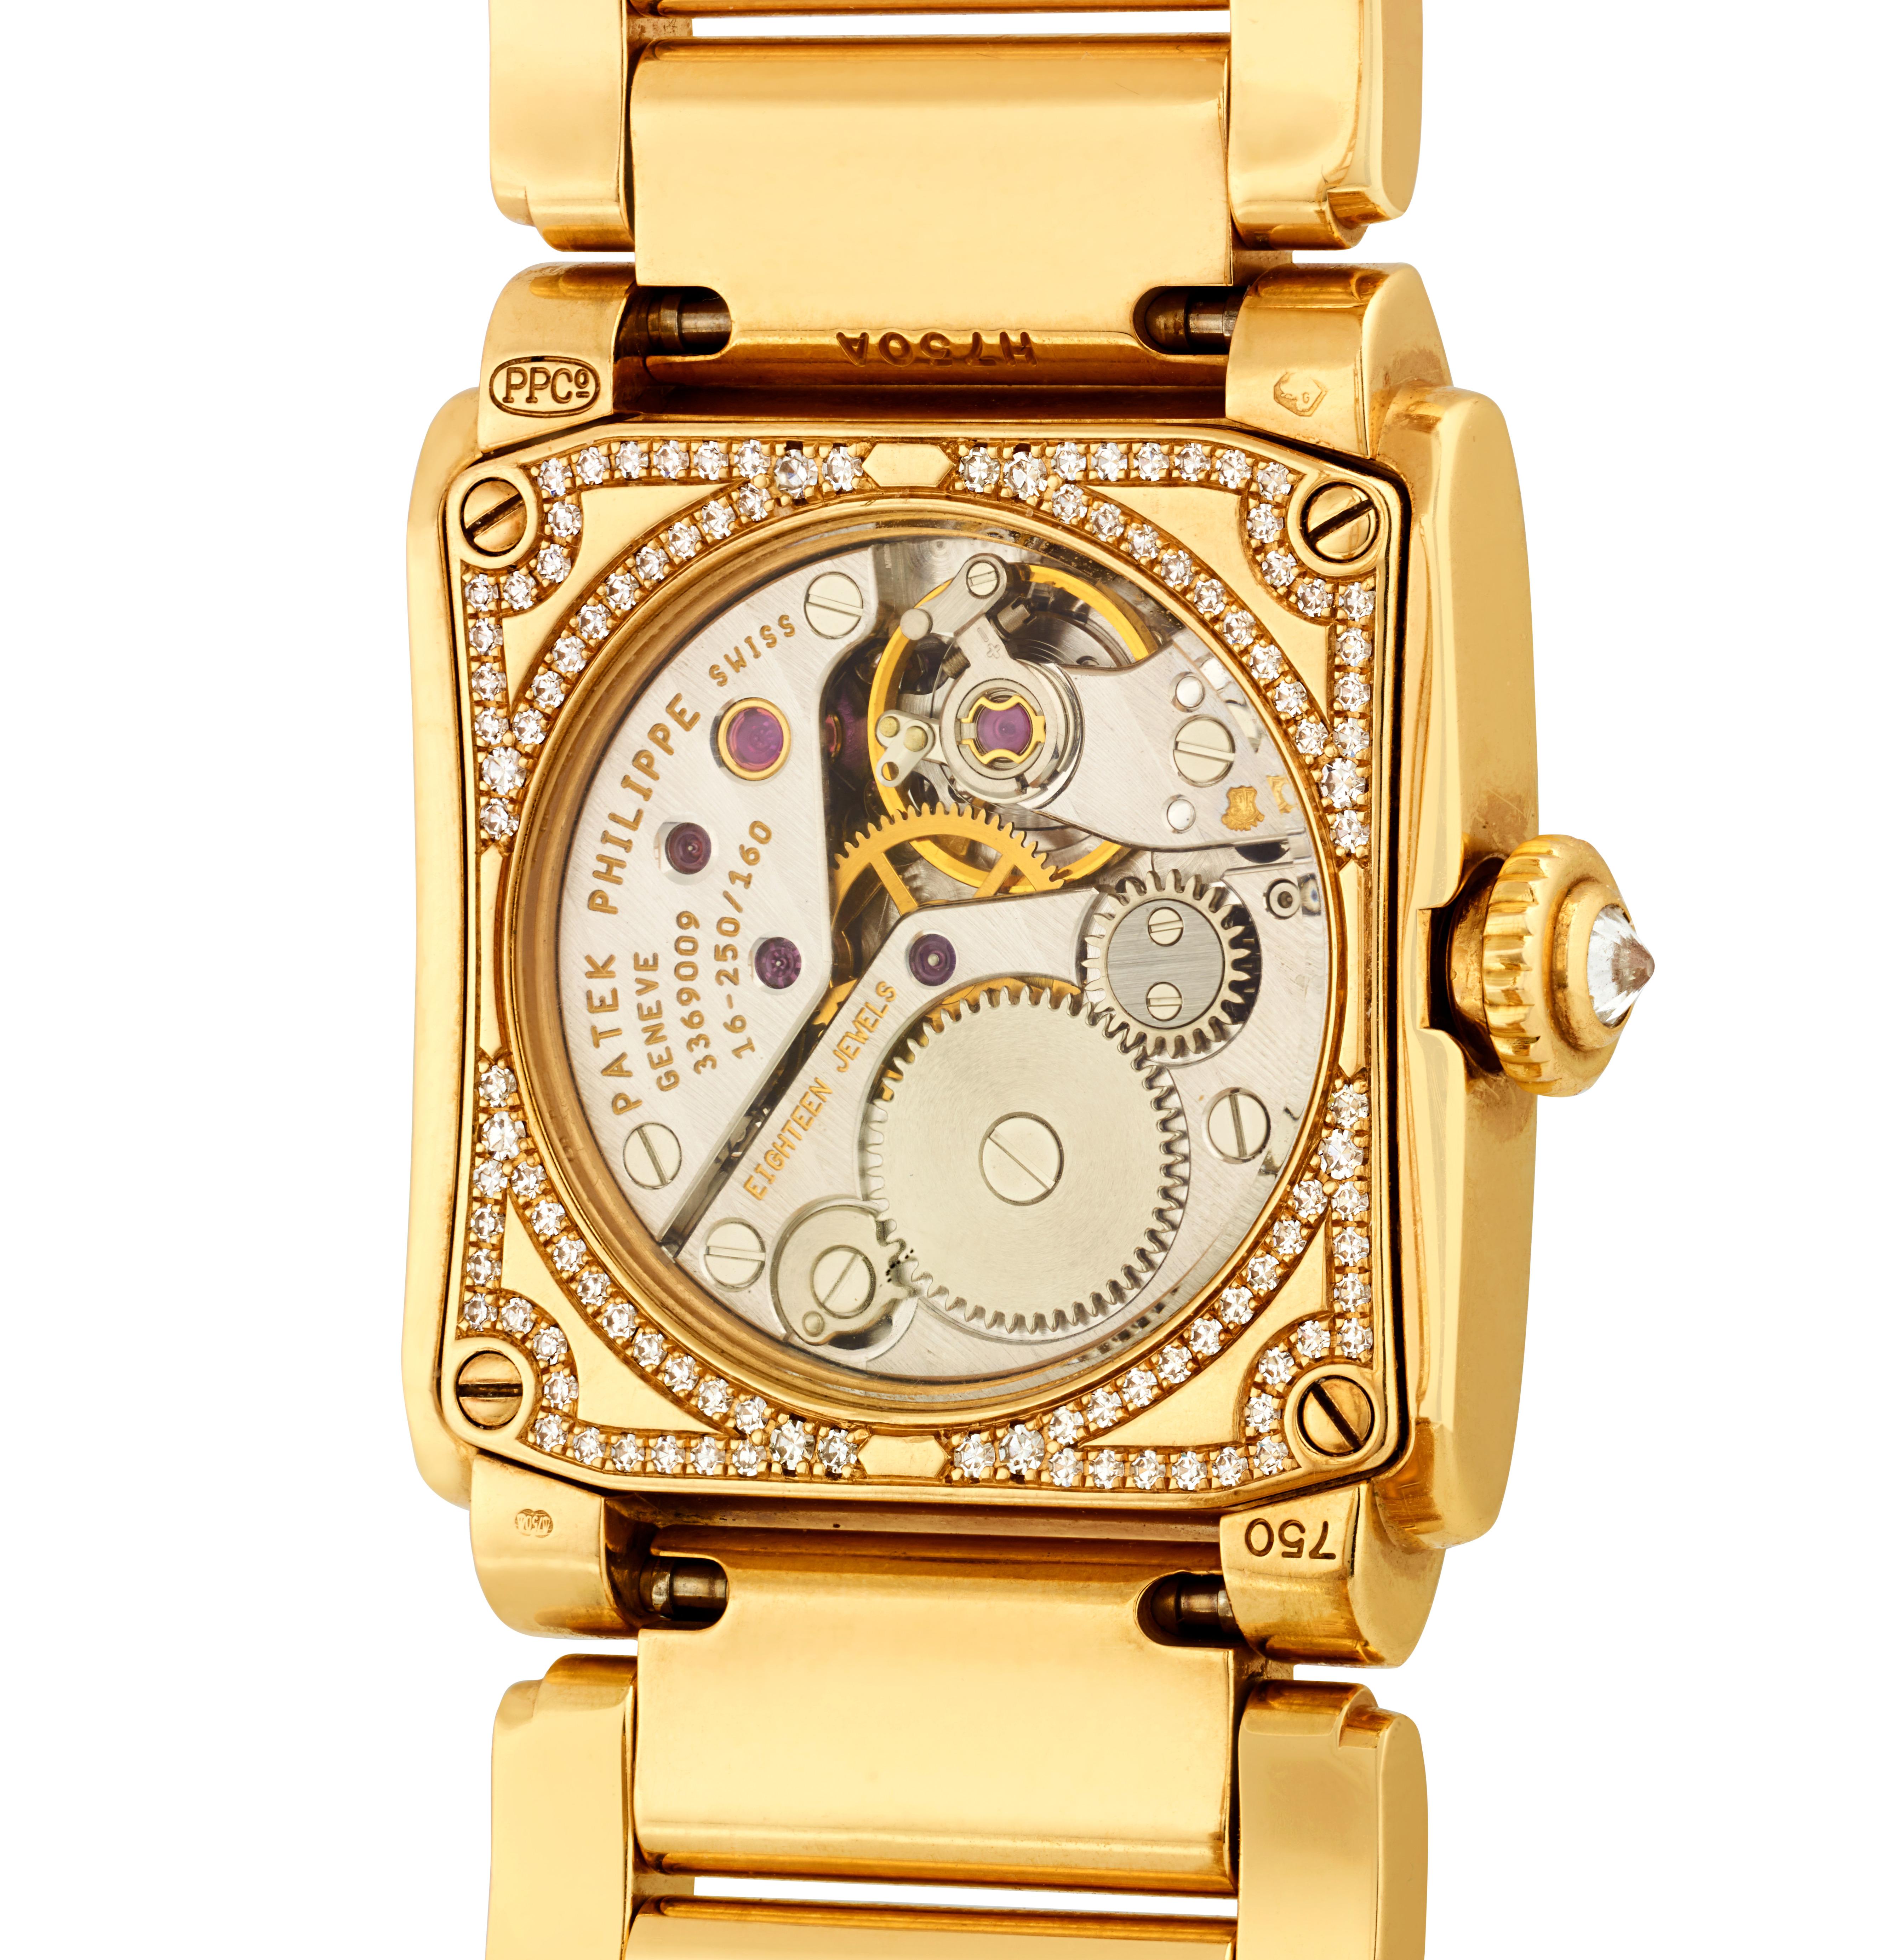 Cette montre pour dame Patek Philippe Twenty~4 représente l'apogée de la précision et du prestige et compte parmi les montres les plus rares sur le marché. Patek Philippe produit un nombre nettement inférieur de montres pour femmes par rapport aux